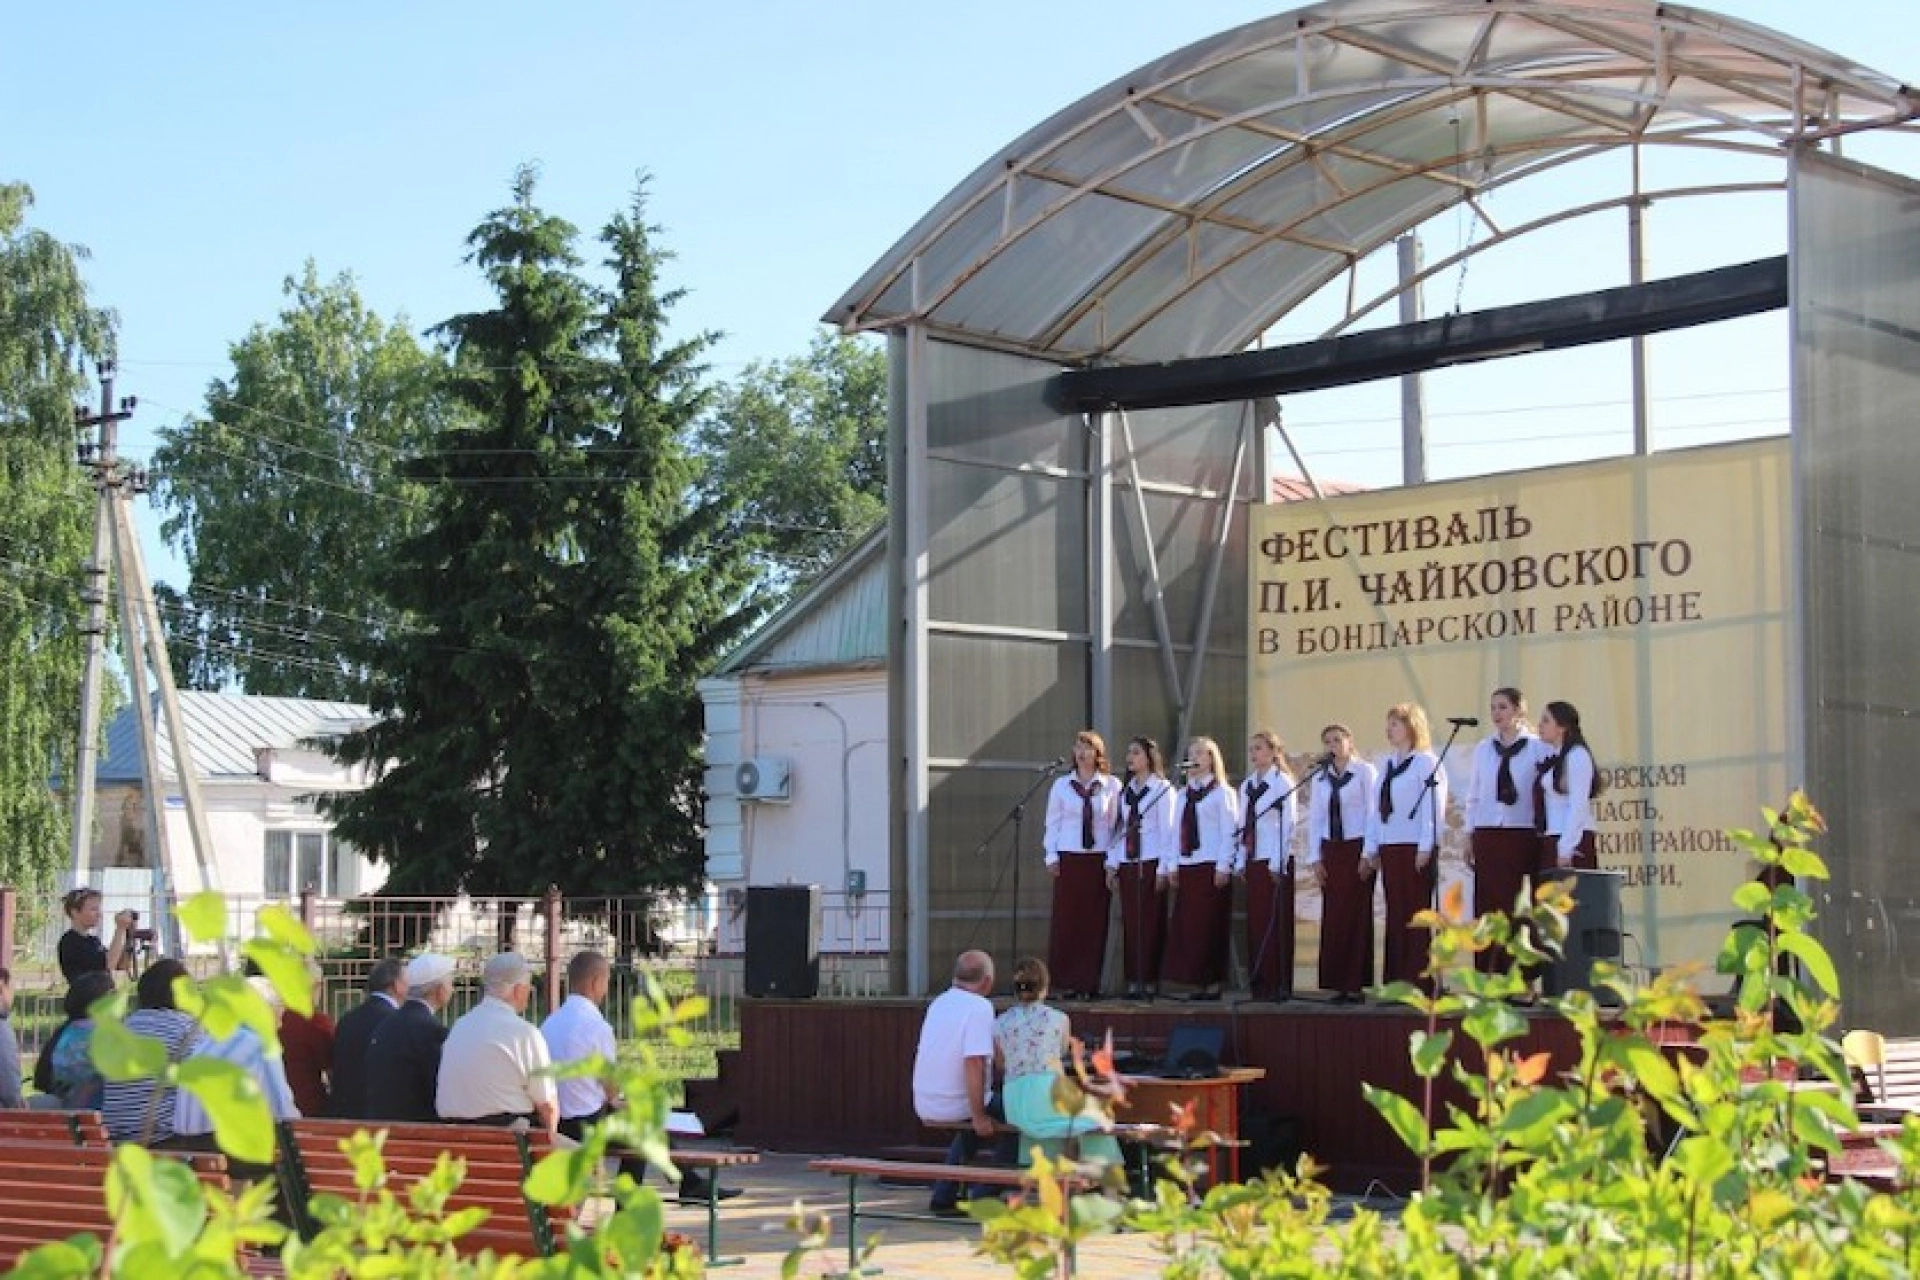 Бондарский фестиваль, посвящённый Чайковскому, состоится в конце мая